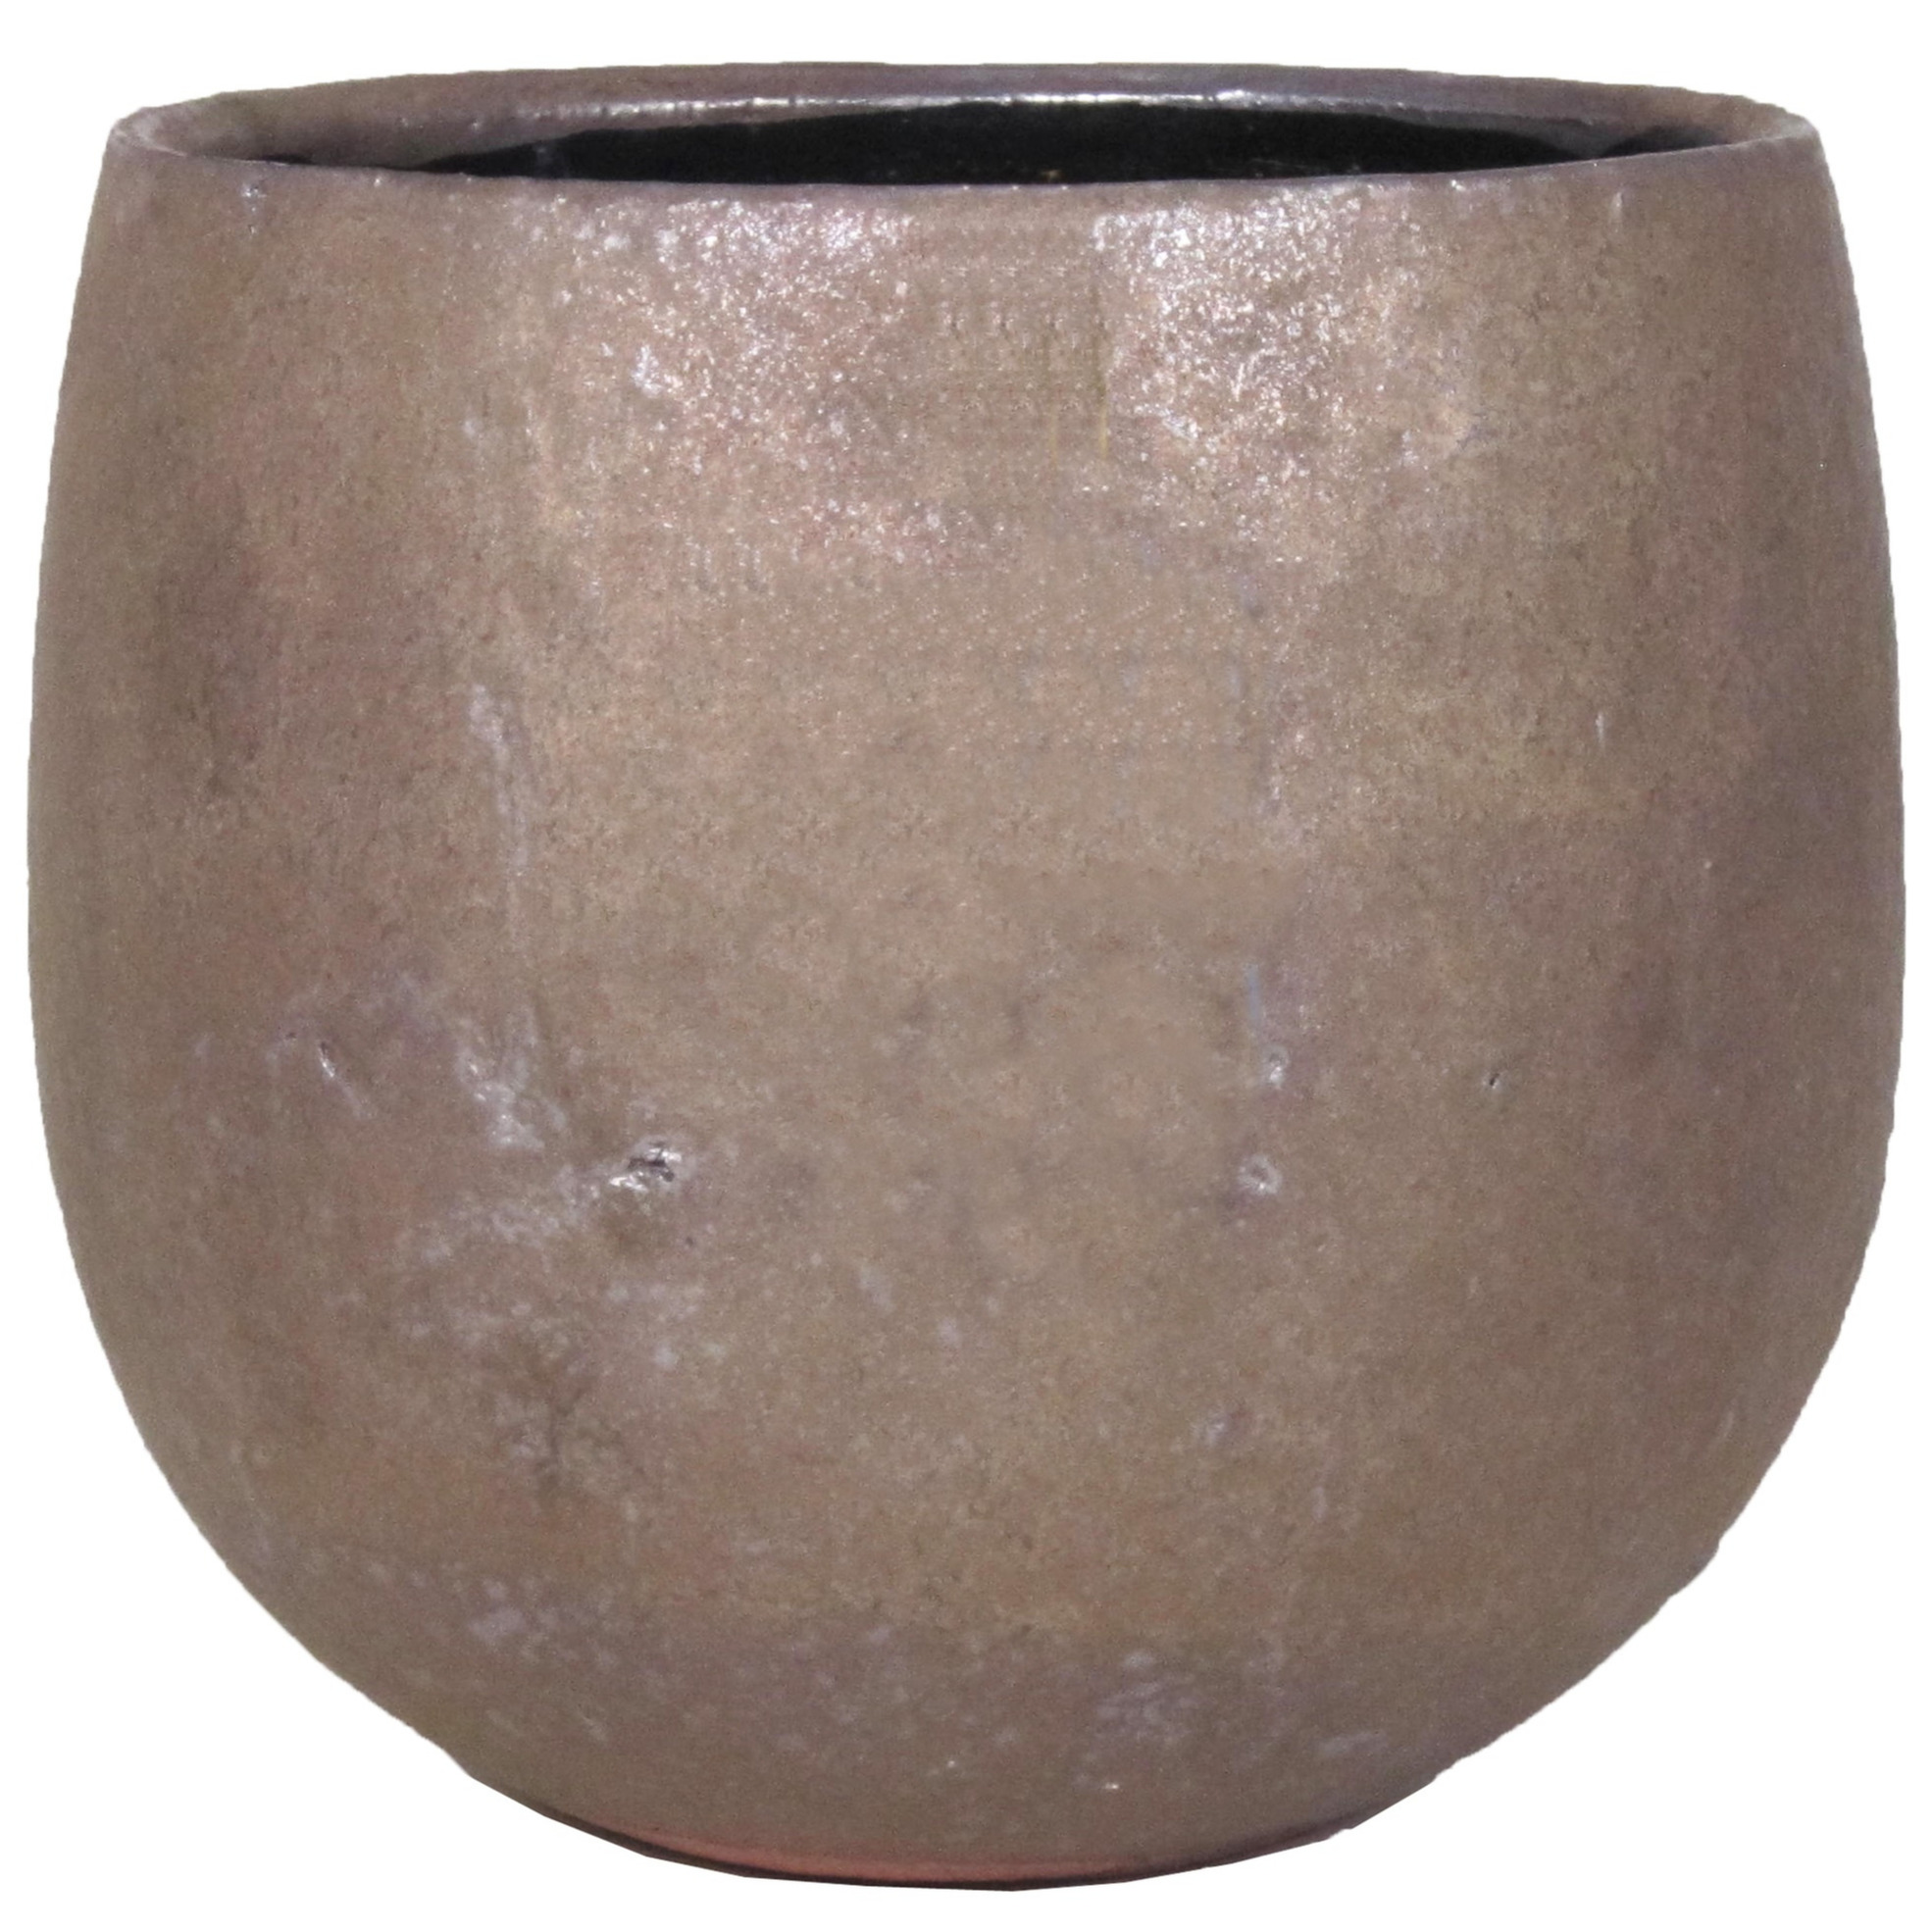 Bloempot-plantenpot schaal van keramiek glanzend brons kleur motief D15-13 cm en H12 cm